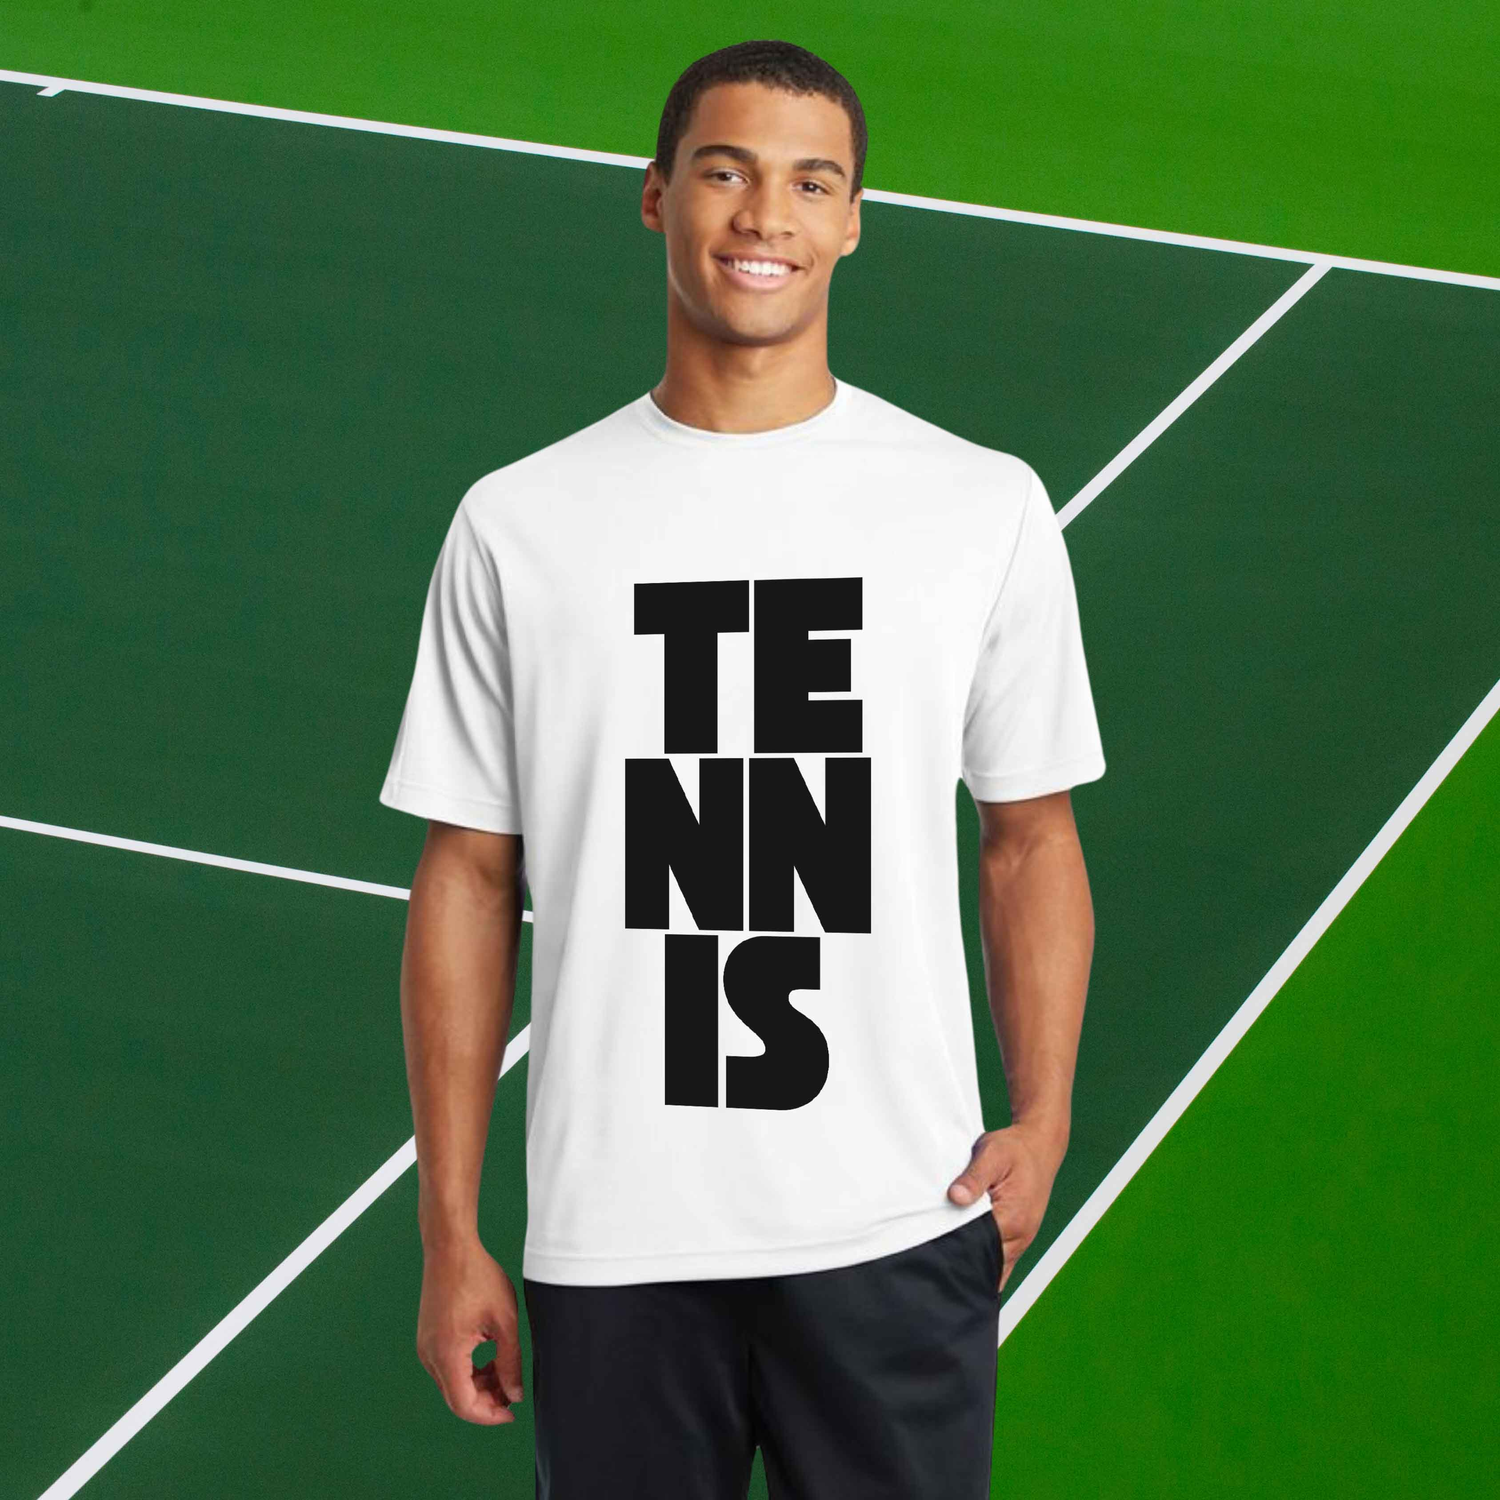 TENNIS SHIRTS